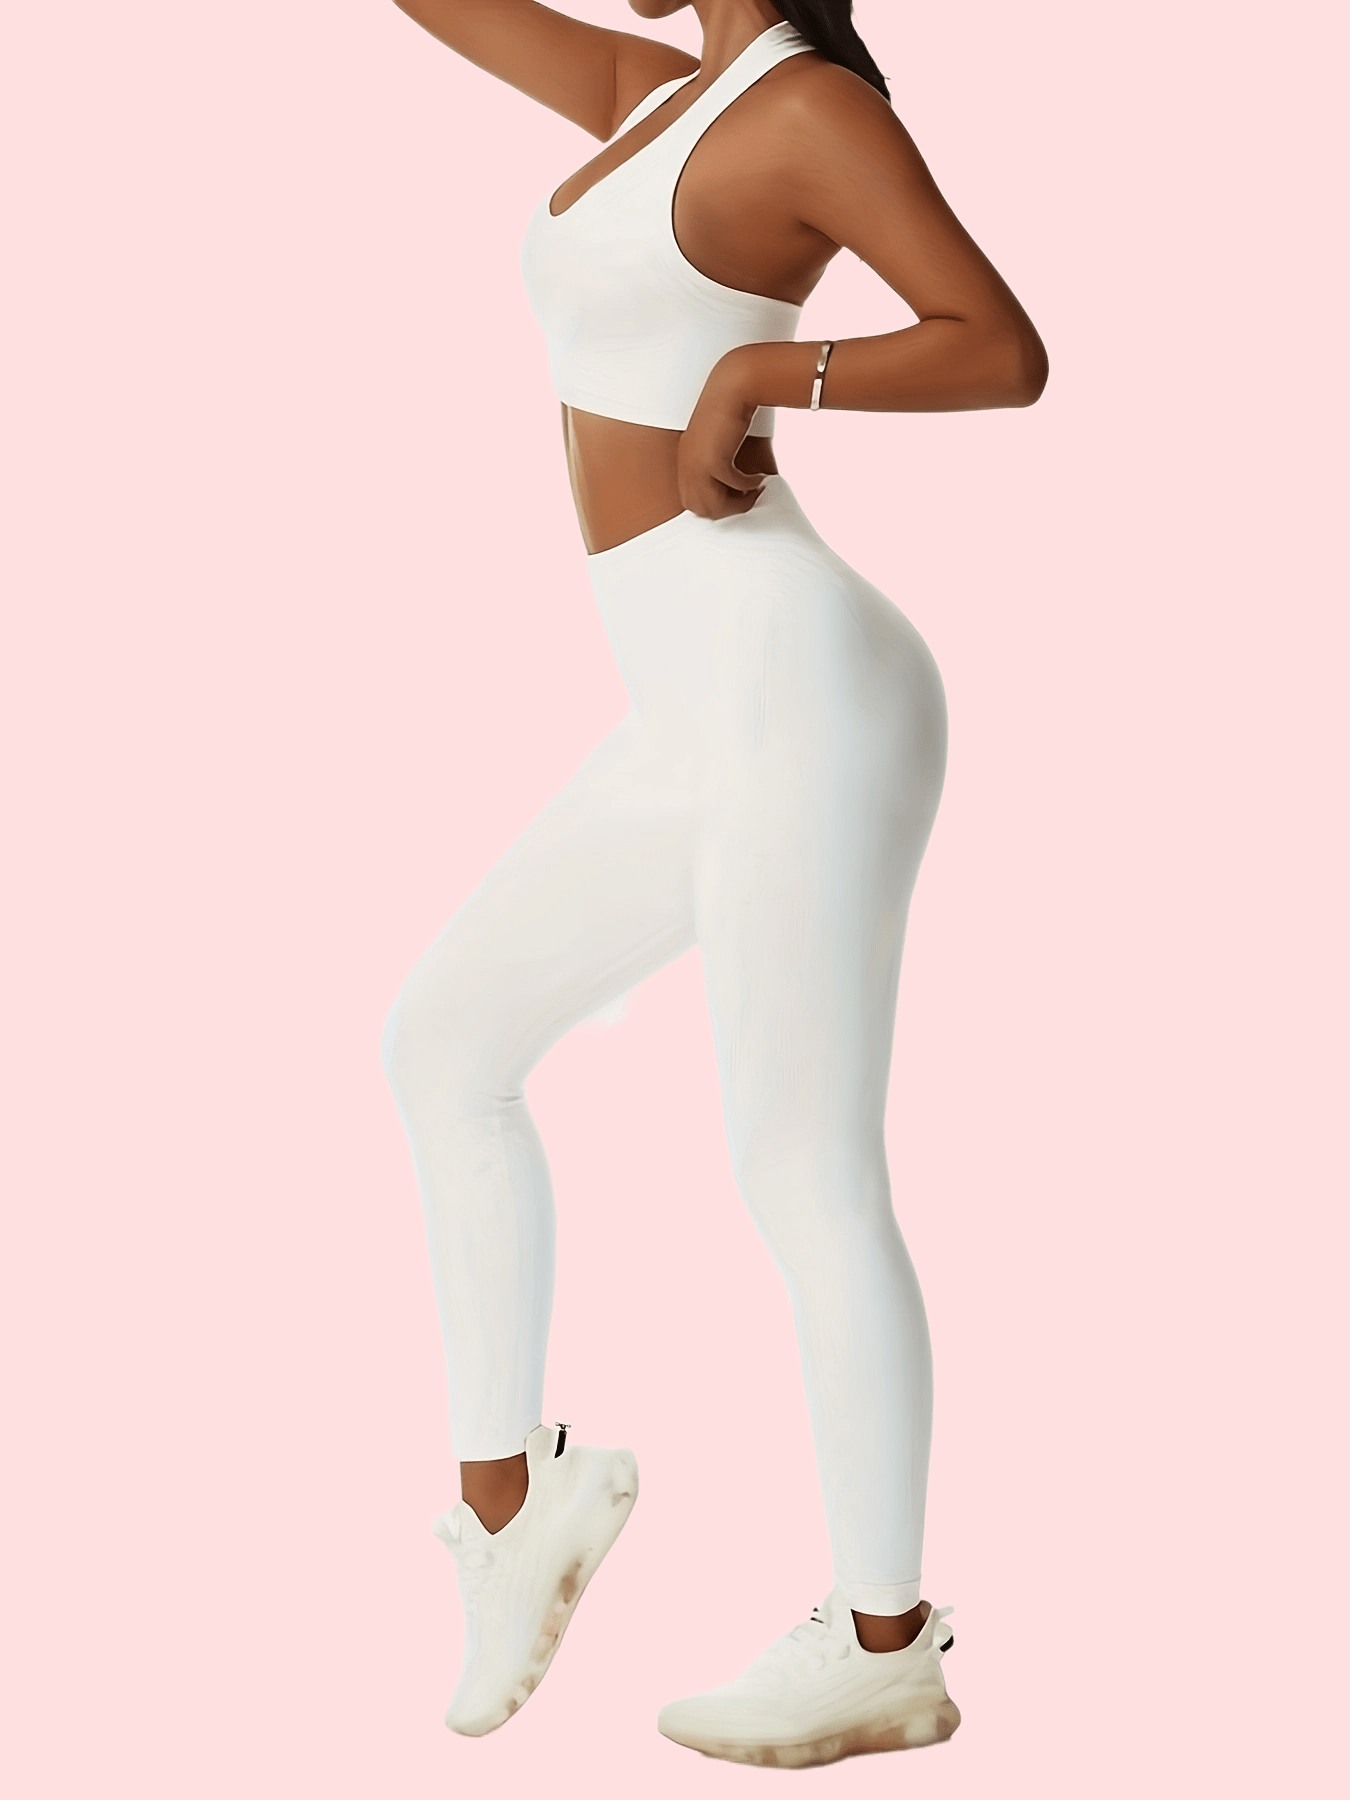 White Yoga Shorts - Temu